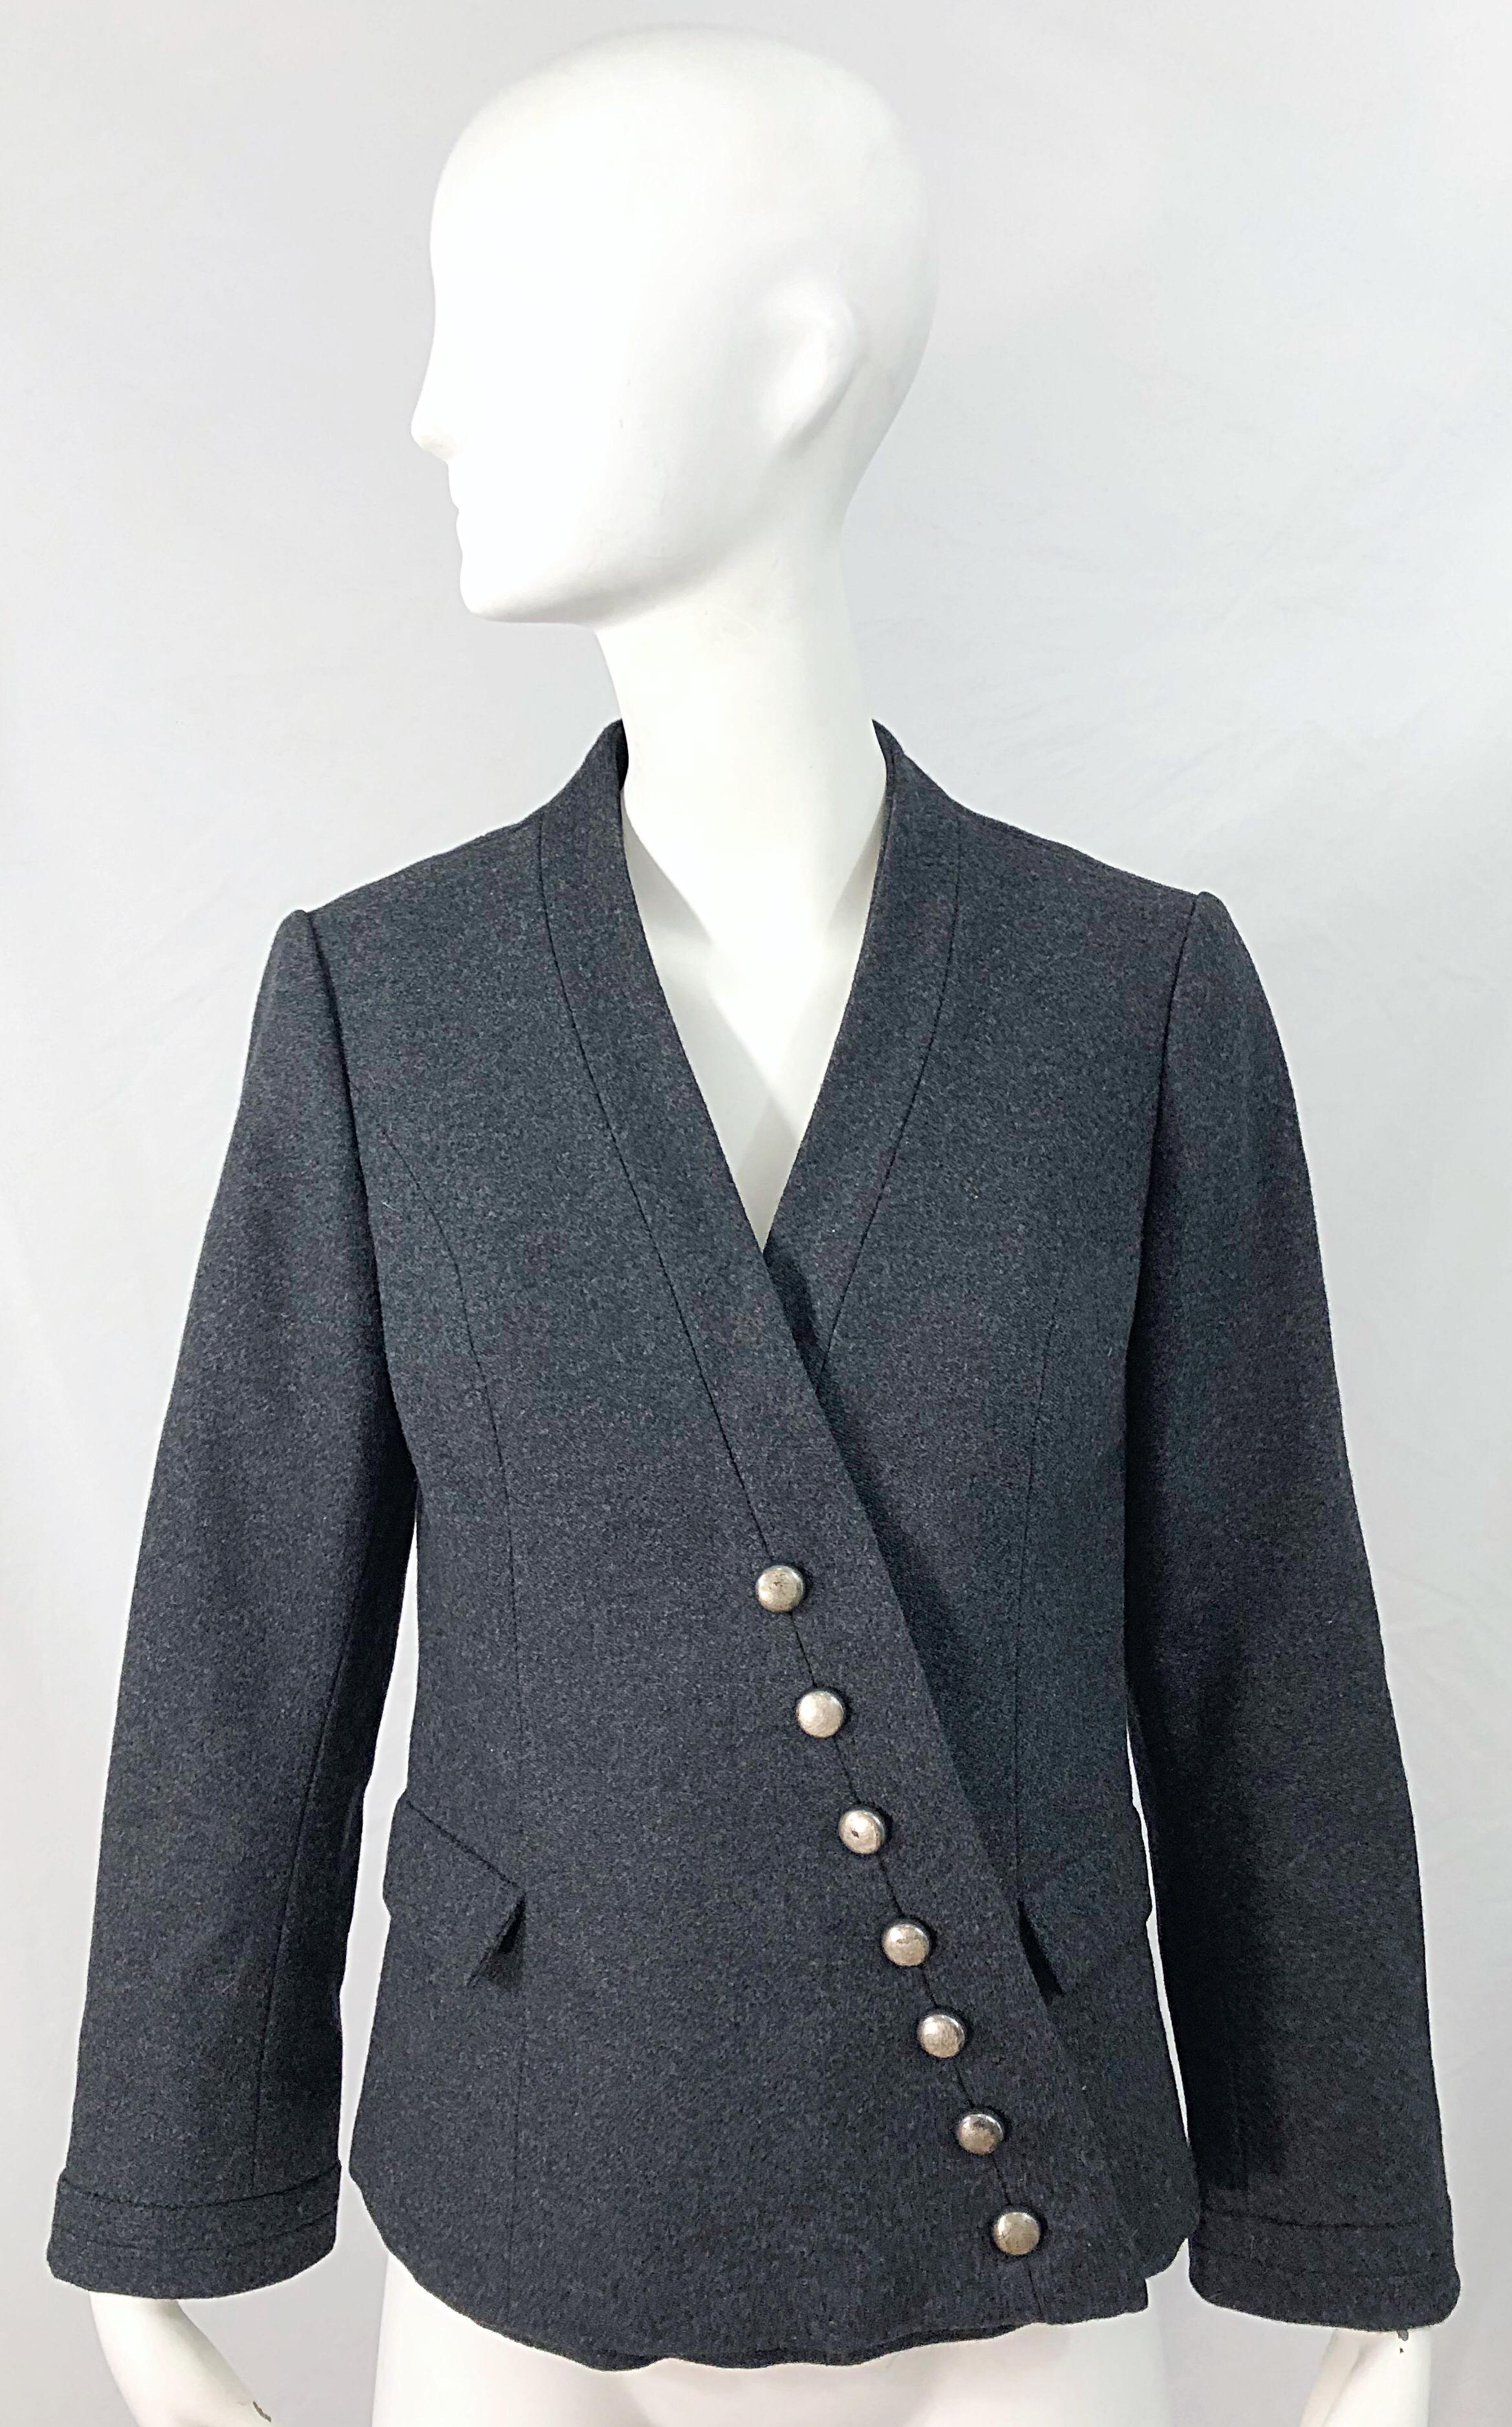 La veste parfaite ! Cette veste HELEN ROSE du milieu des années 1950 a tout pour plaire : style, praticité, chaleur, etc. ! Une alternative parfaite à une veste noire. Une laine douce qui convient parfaitement à tout moment de l'année. Boutons en